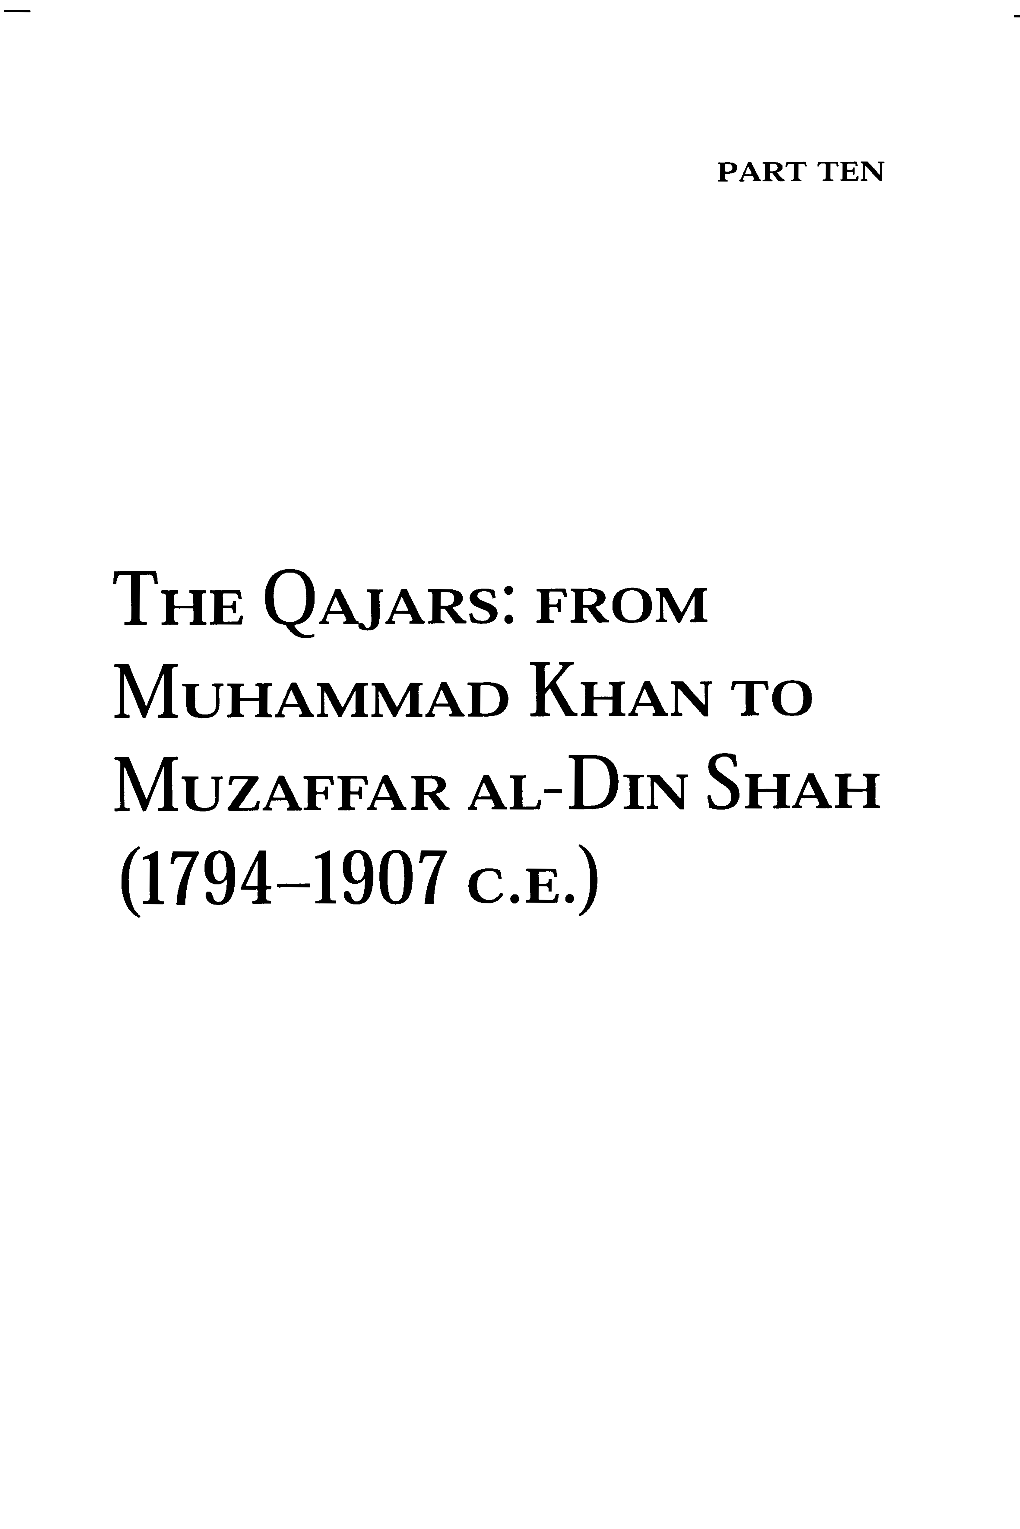 Part Ten: the Qajars- from Muhammad Khan to Muzarffar Al